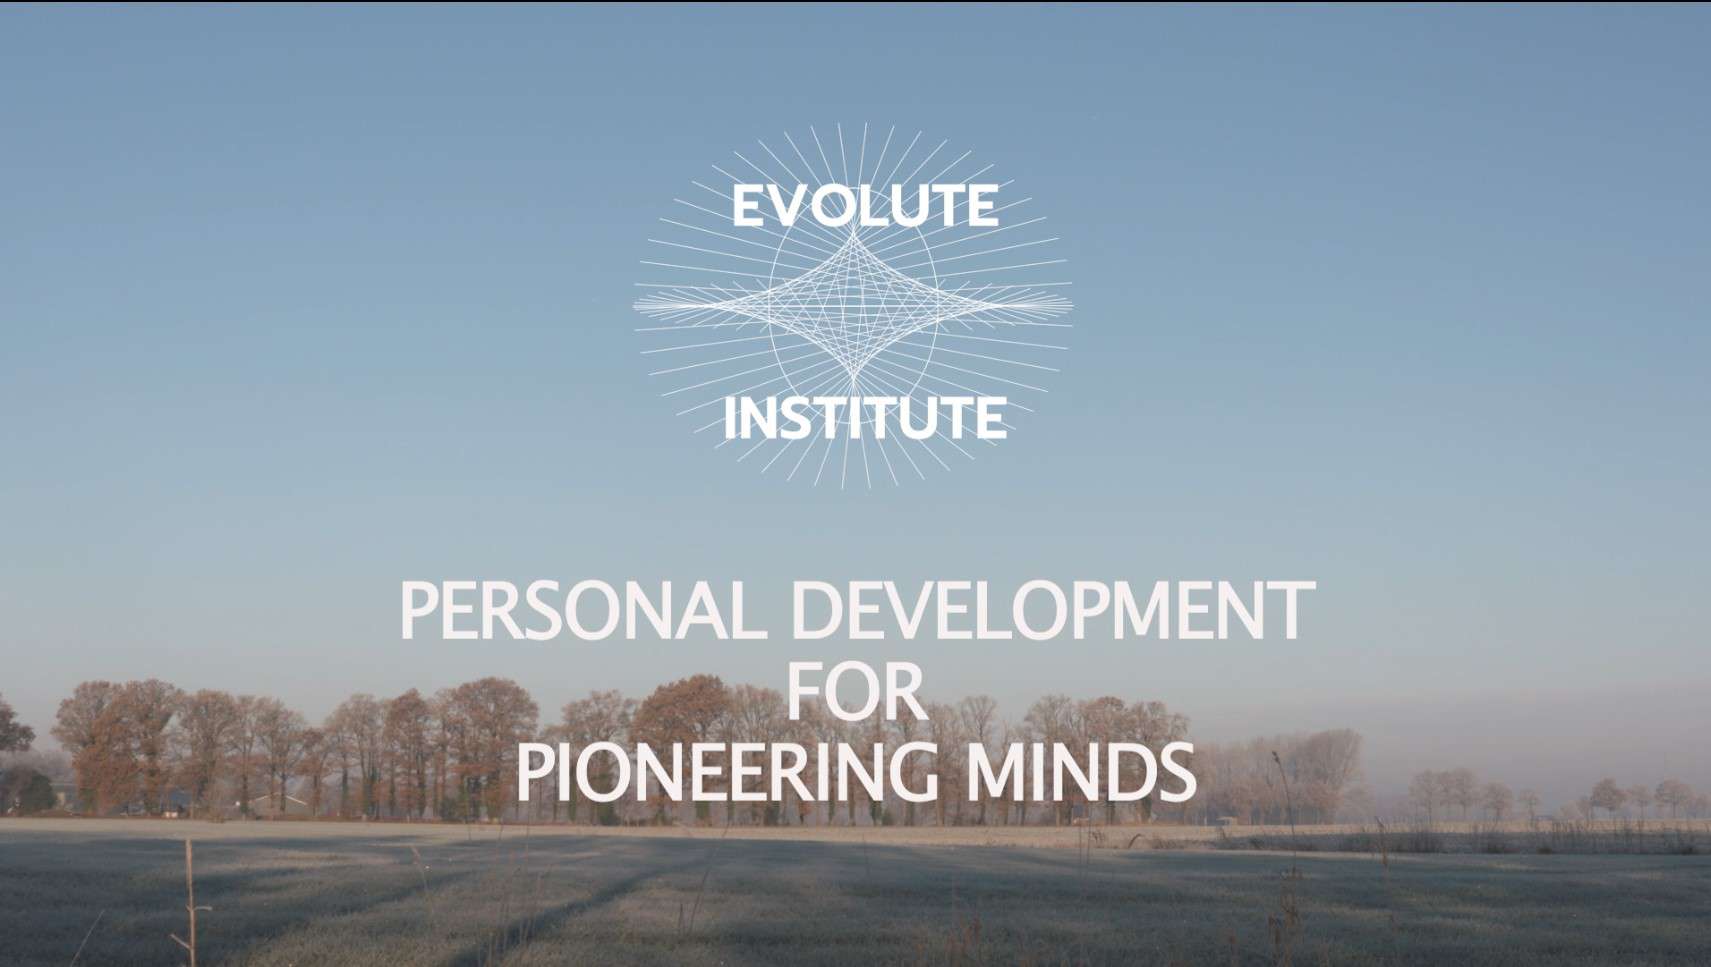 Il programma di ritiro psichedelico evolead per lo sviluppo personale delle menti pionieristiche dell'Istituto evoluto